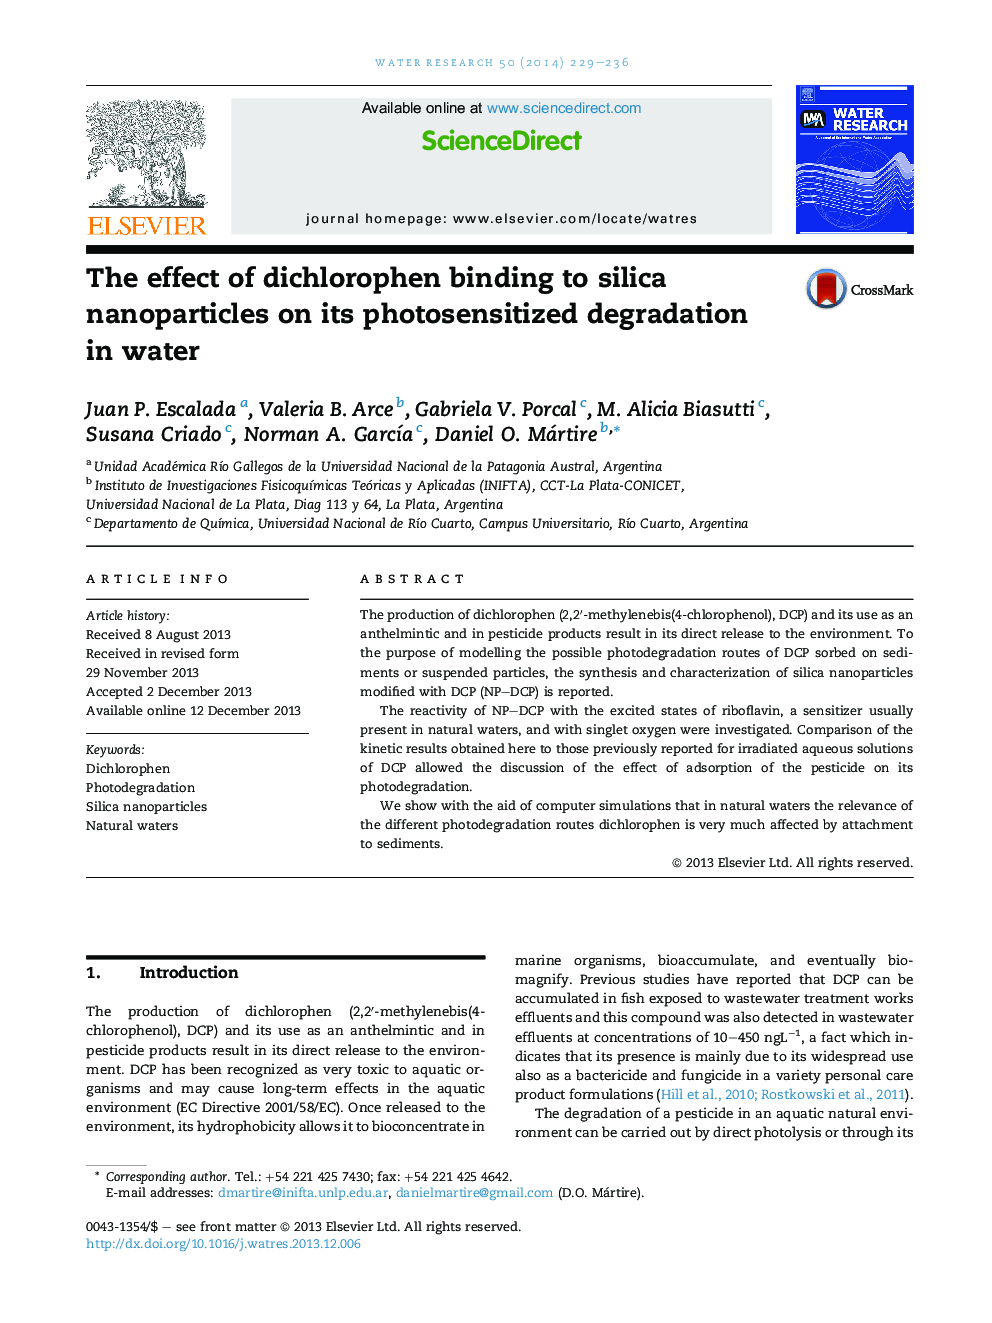 اثر اتصال دی هلوروپن به نانوذرات سیلیکا بر تخریب حساسیت به نور در آب 